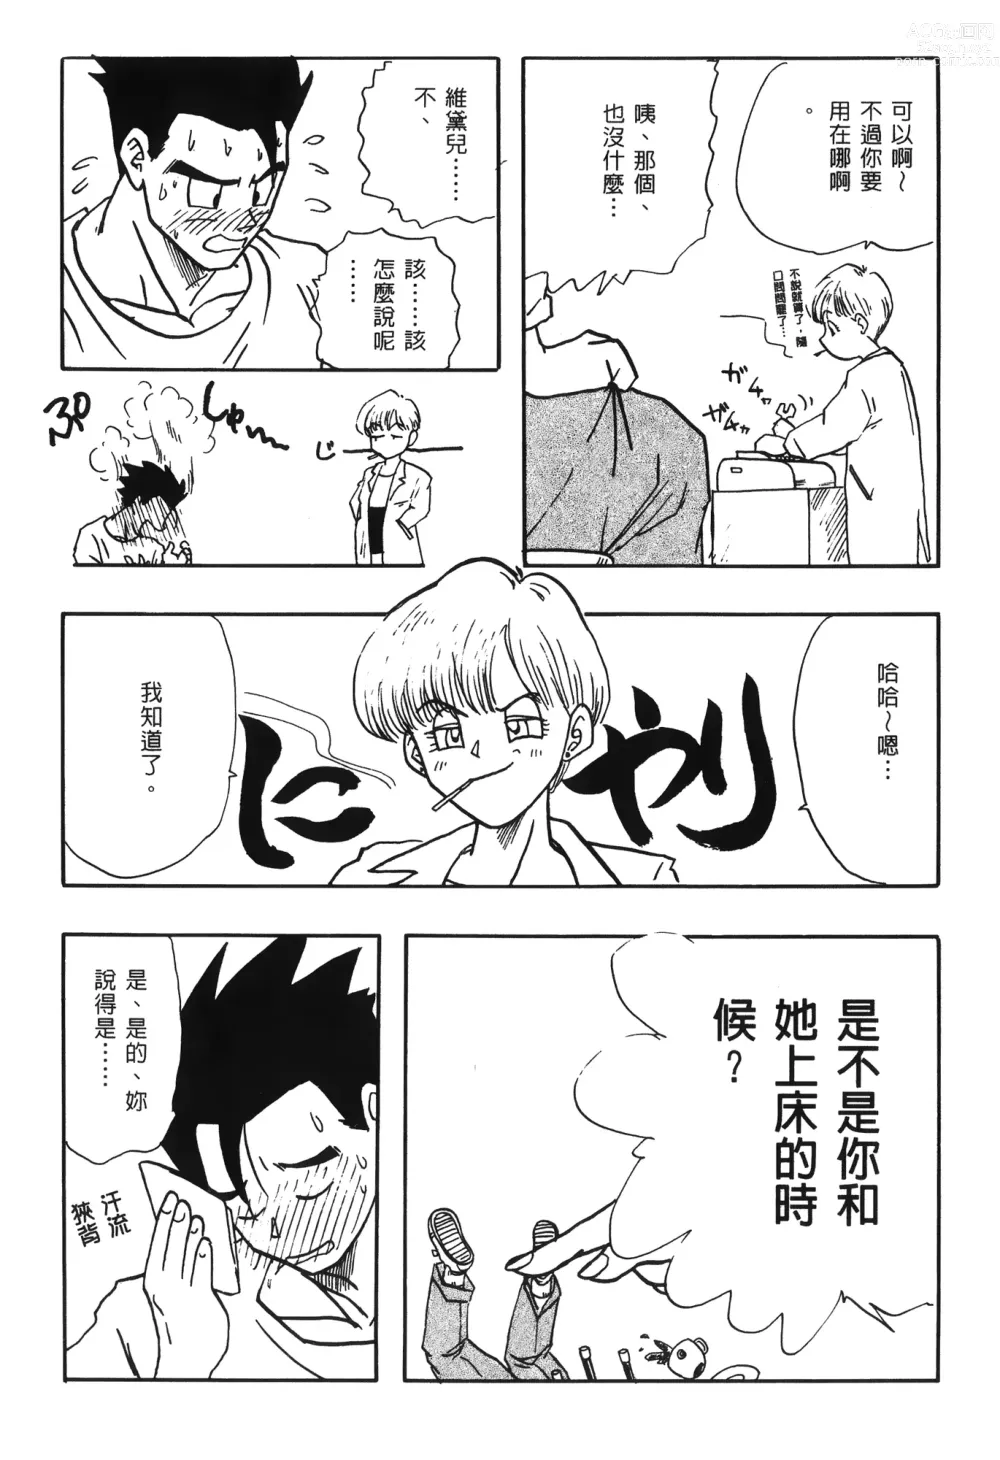 Page 25 of doujinshi ドラゴンパール 03